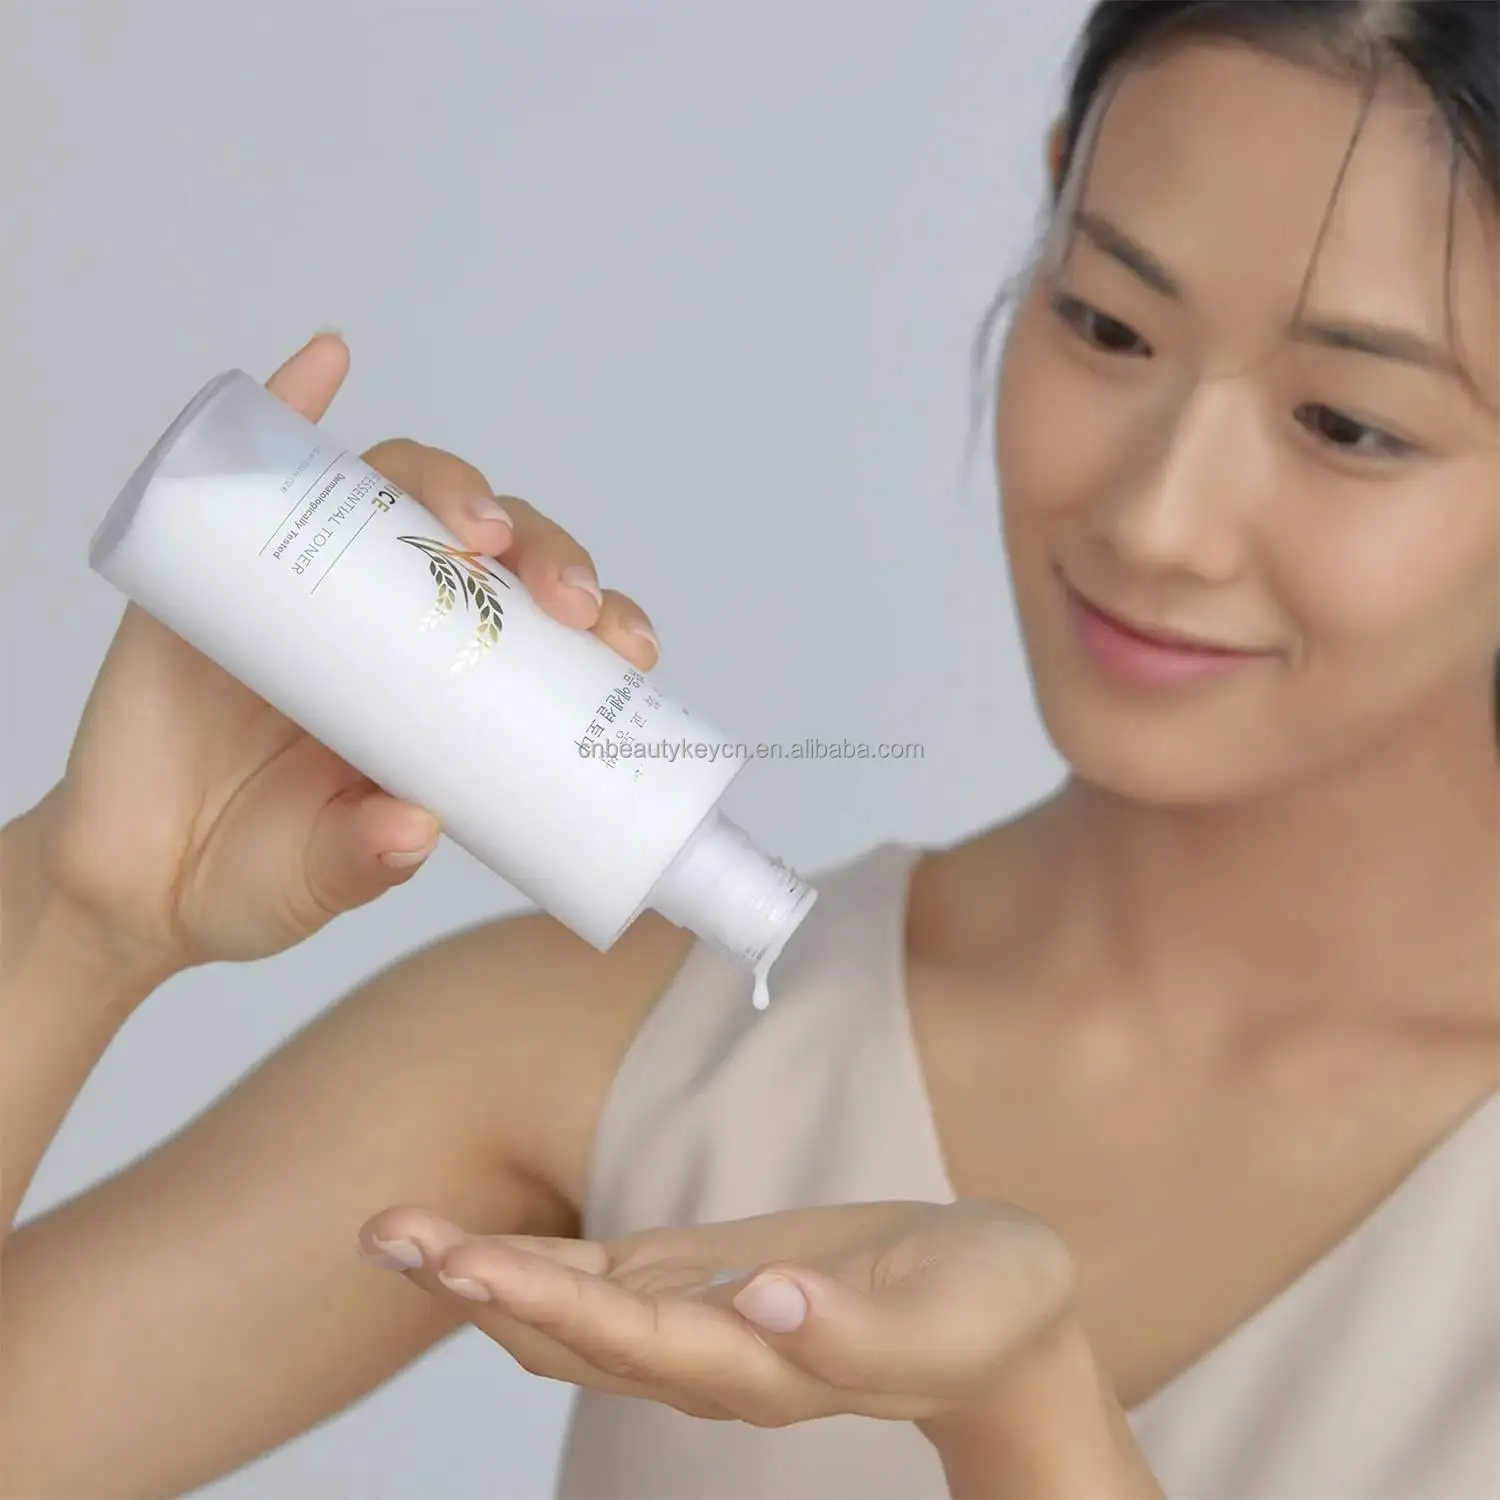 Toner Kulit Wajah beras organik Label pribadi grosir pelembab wajah air Toner beras Korea